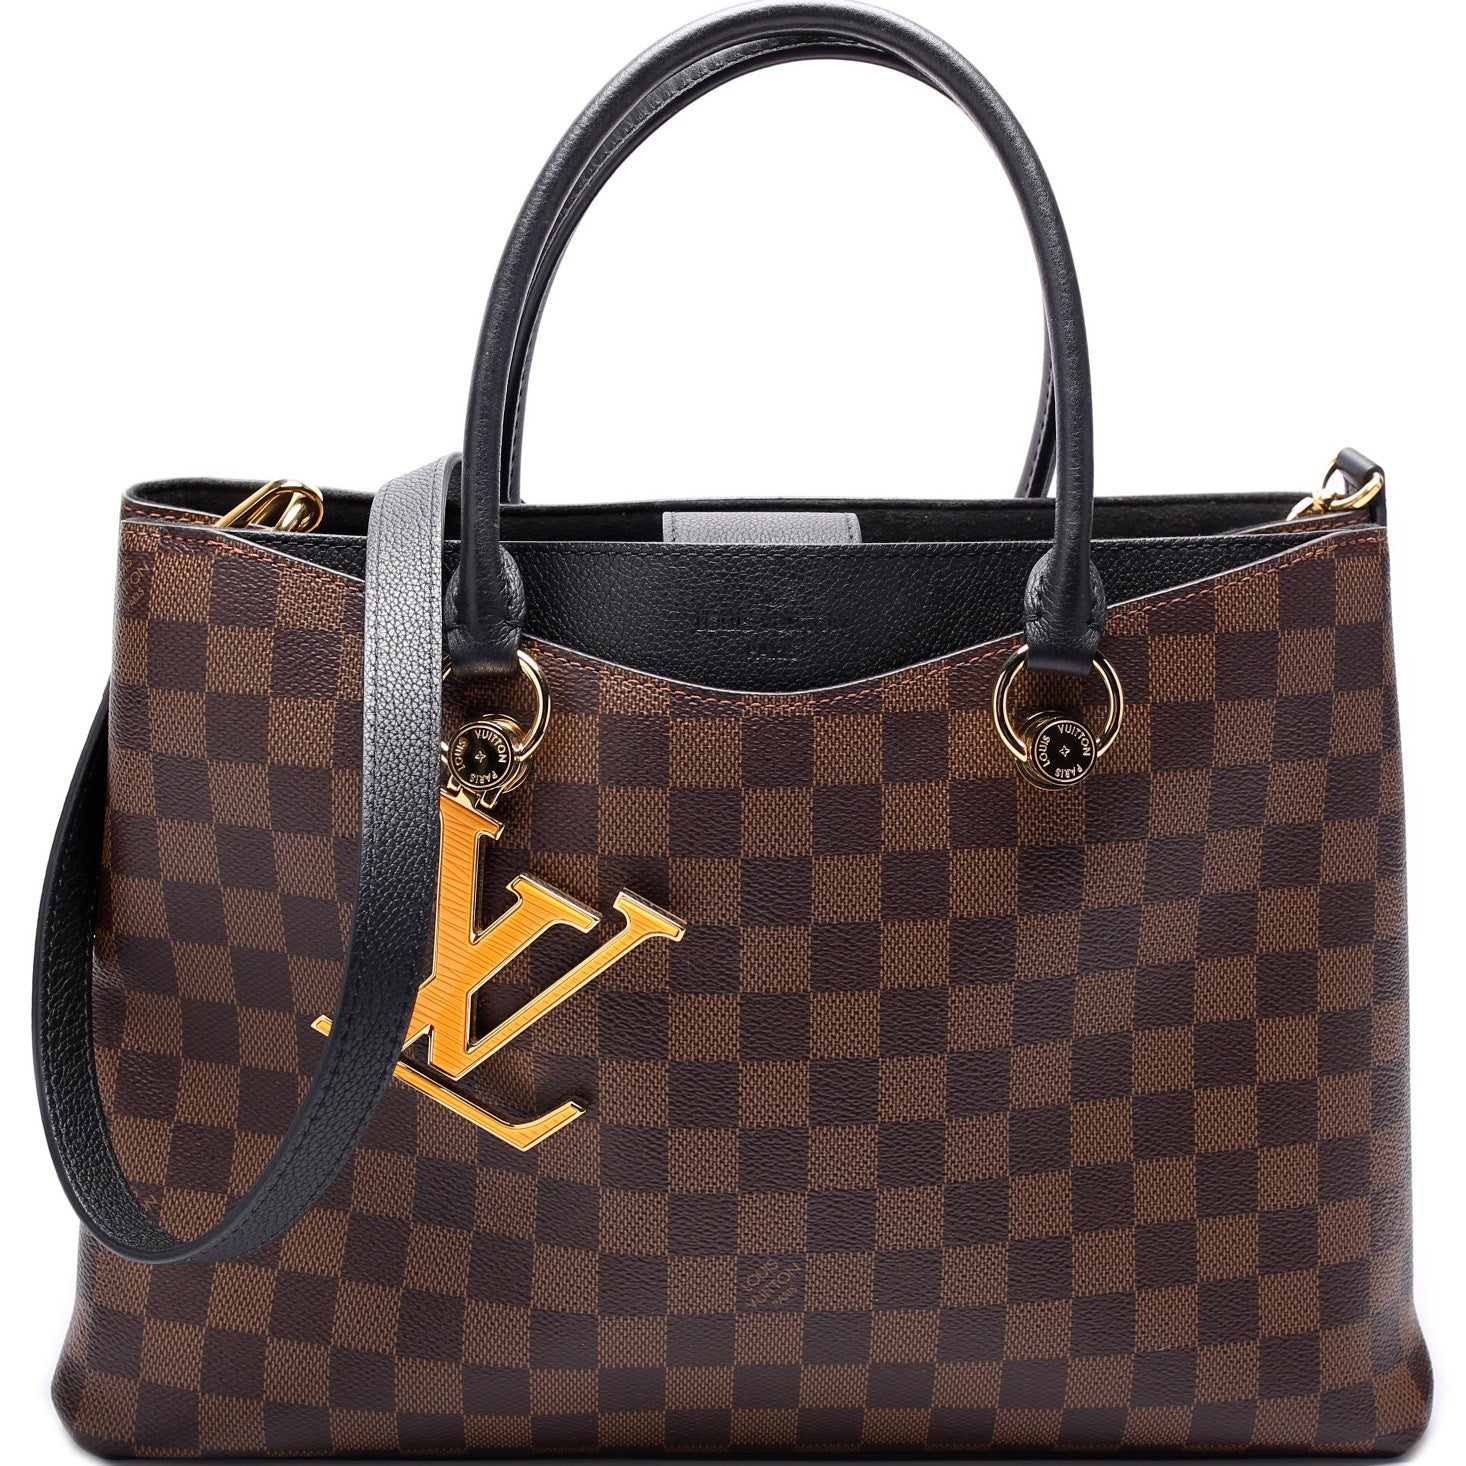 Louis Vuitton 2020 Damier Ebene Riverside - Brown Totes, Handbags